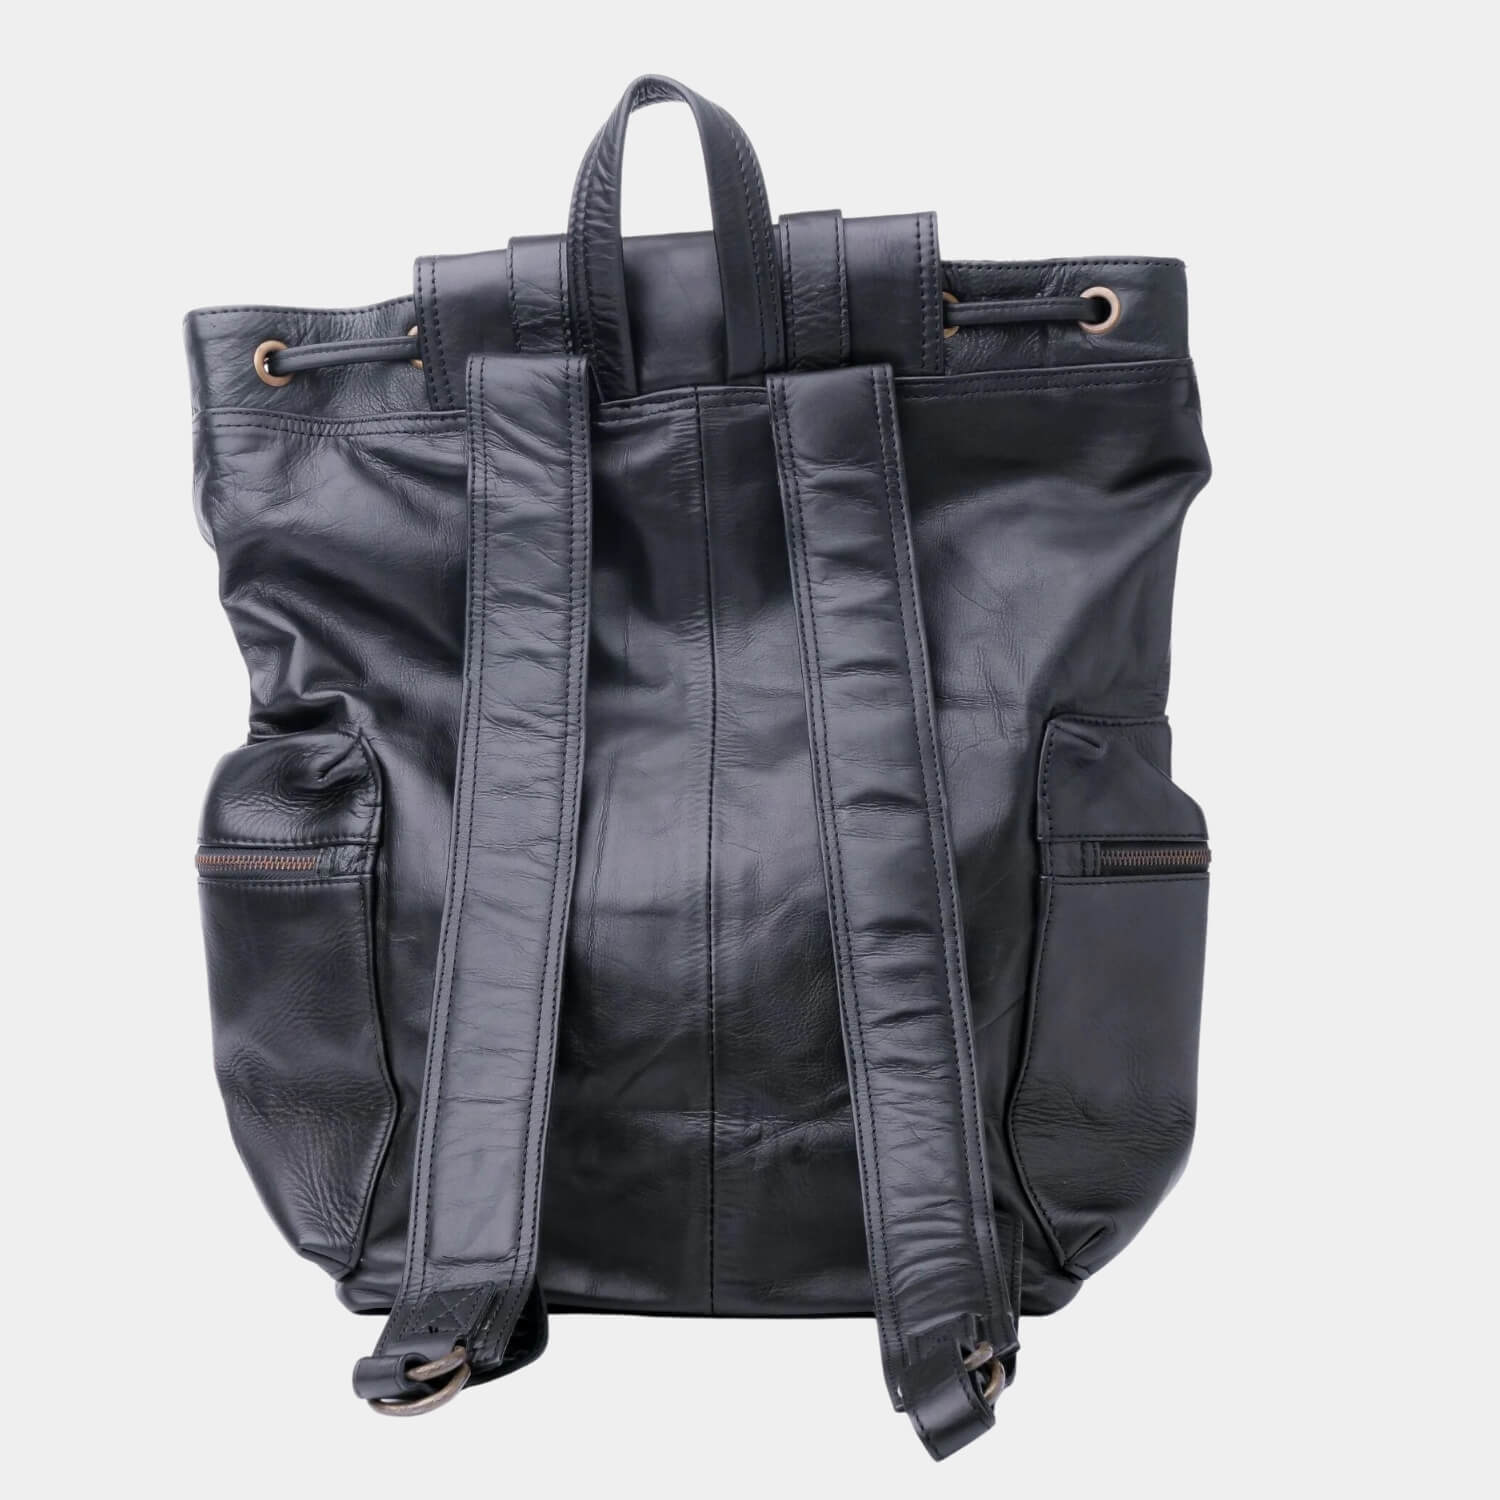 Granite Black Leather Travel Backpack Back